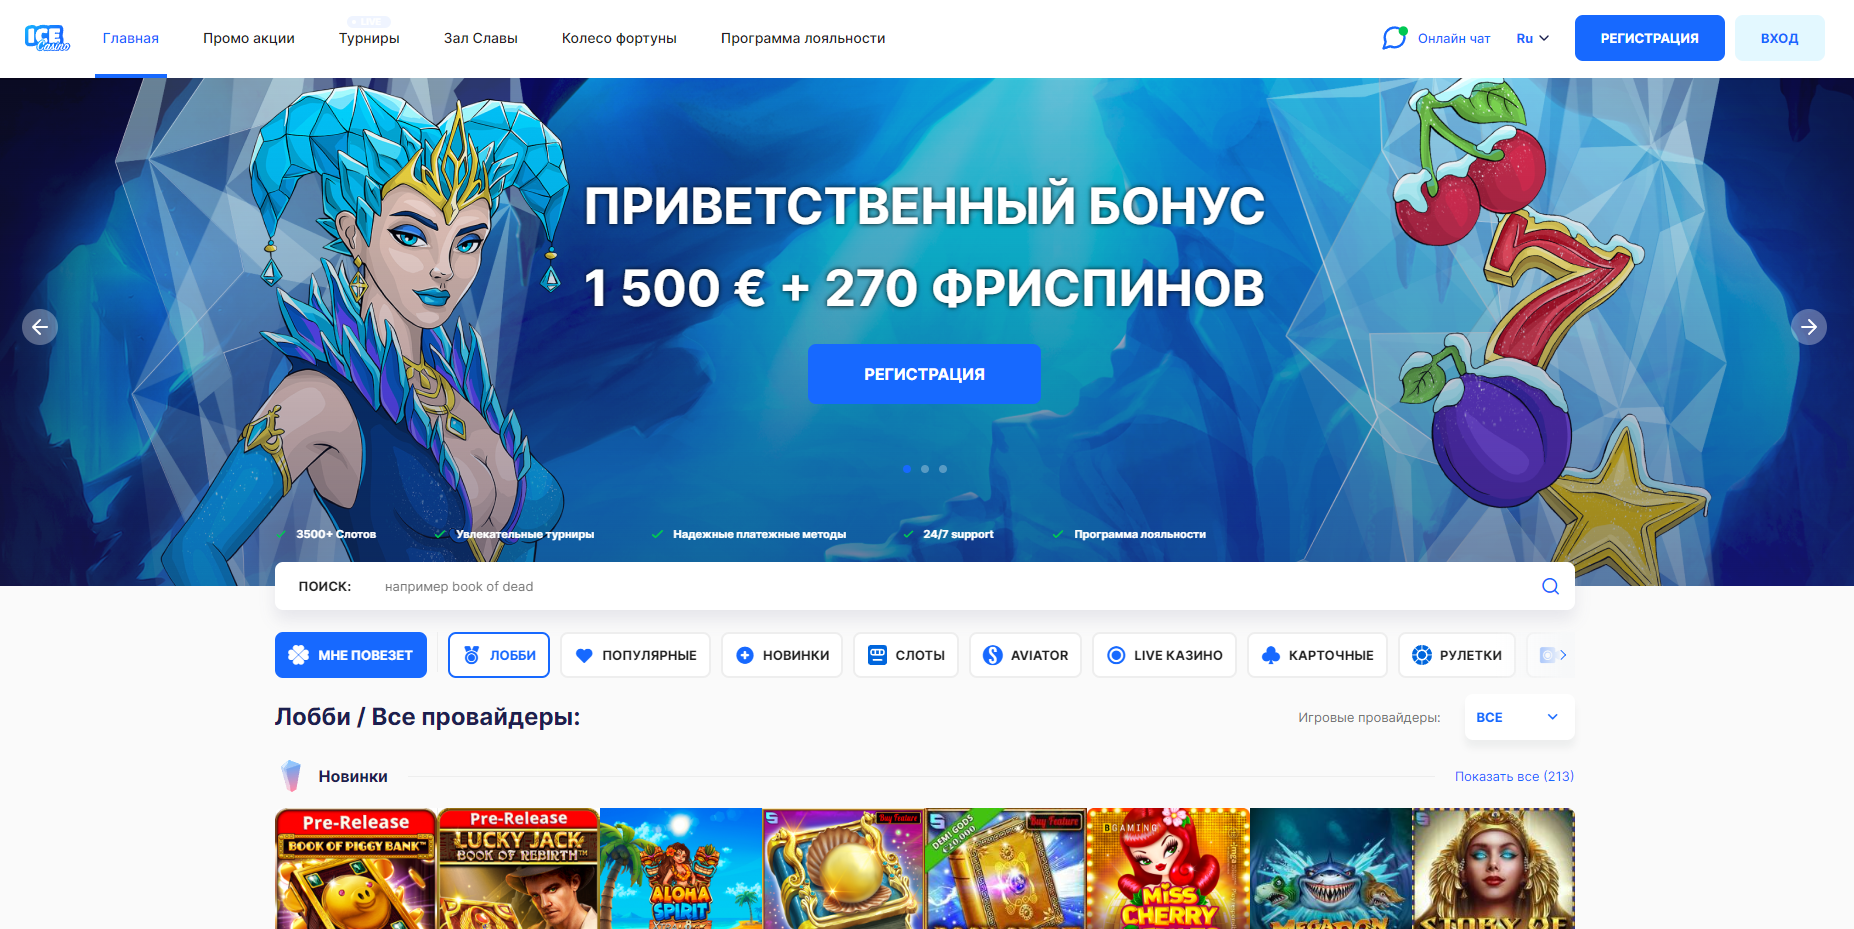 Ice Casino_ Онлайн казино _ Казино игры и игровые автоматы - Opera 2022-08-01 17.14.52.png